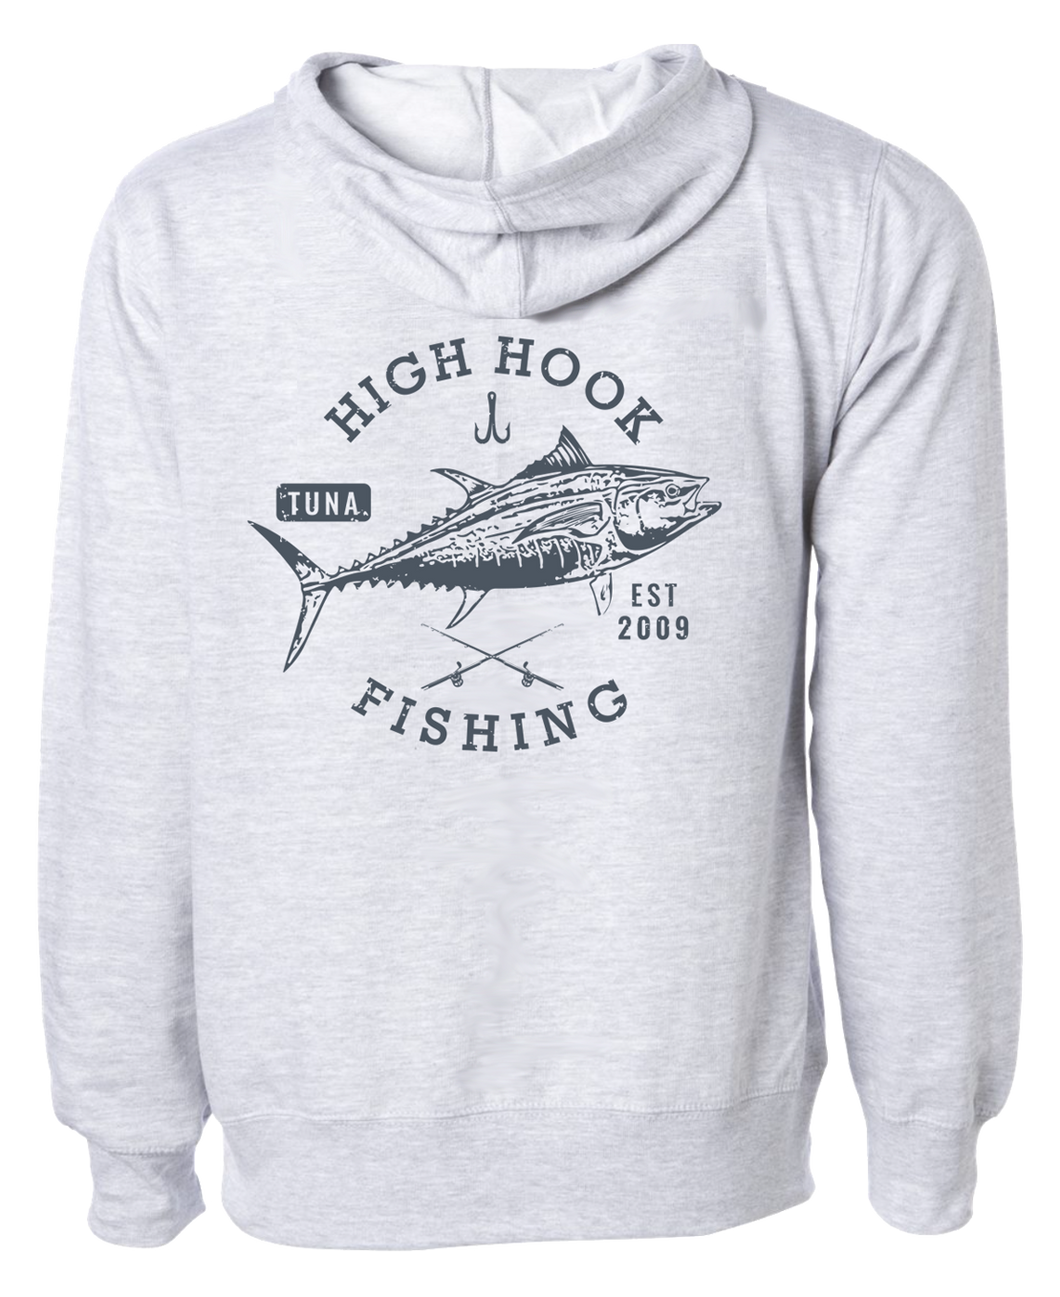 High Hook Heavyweight Tuna Hoodie (Grey)